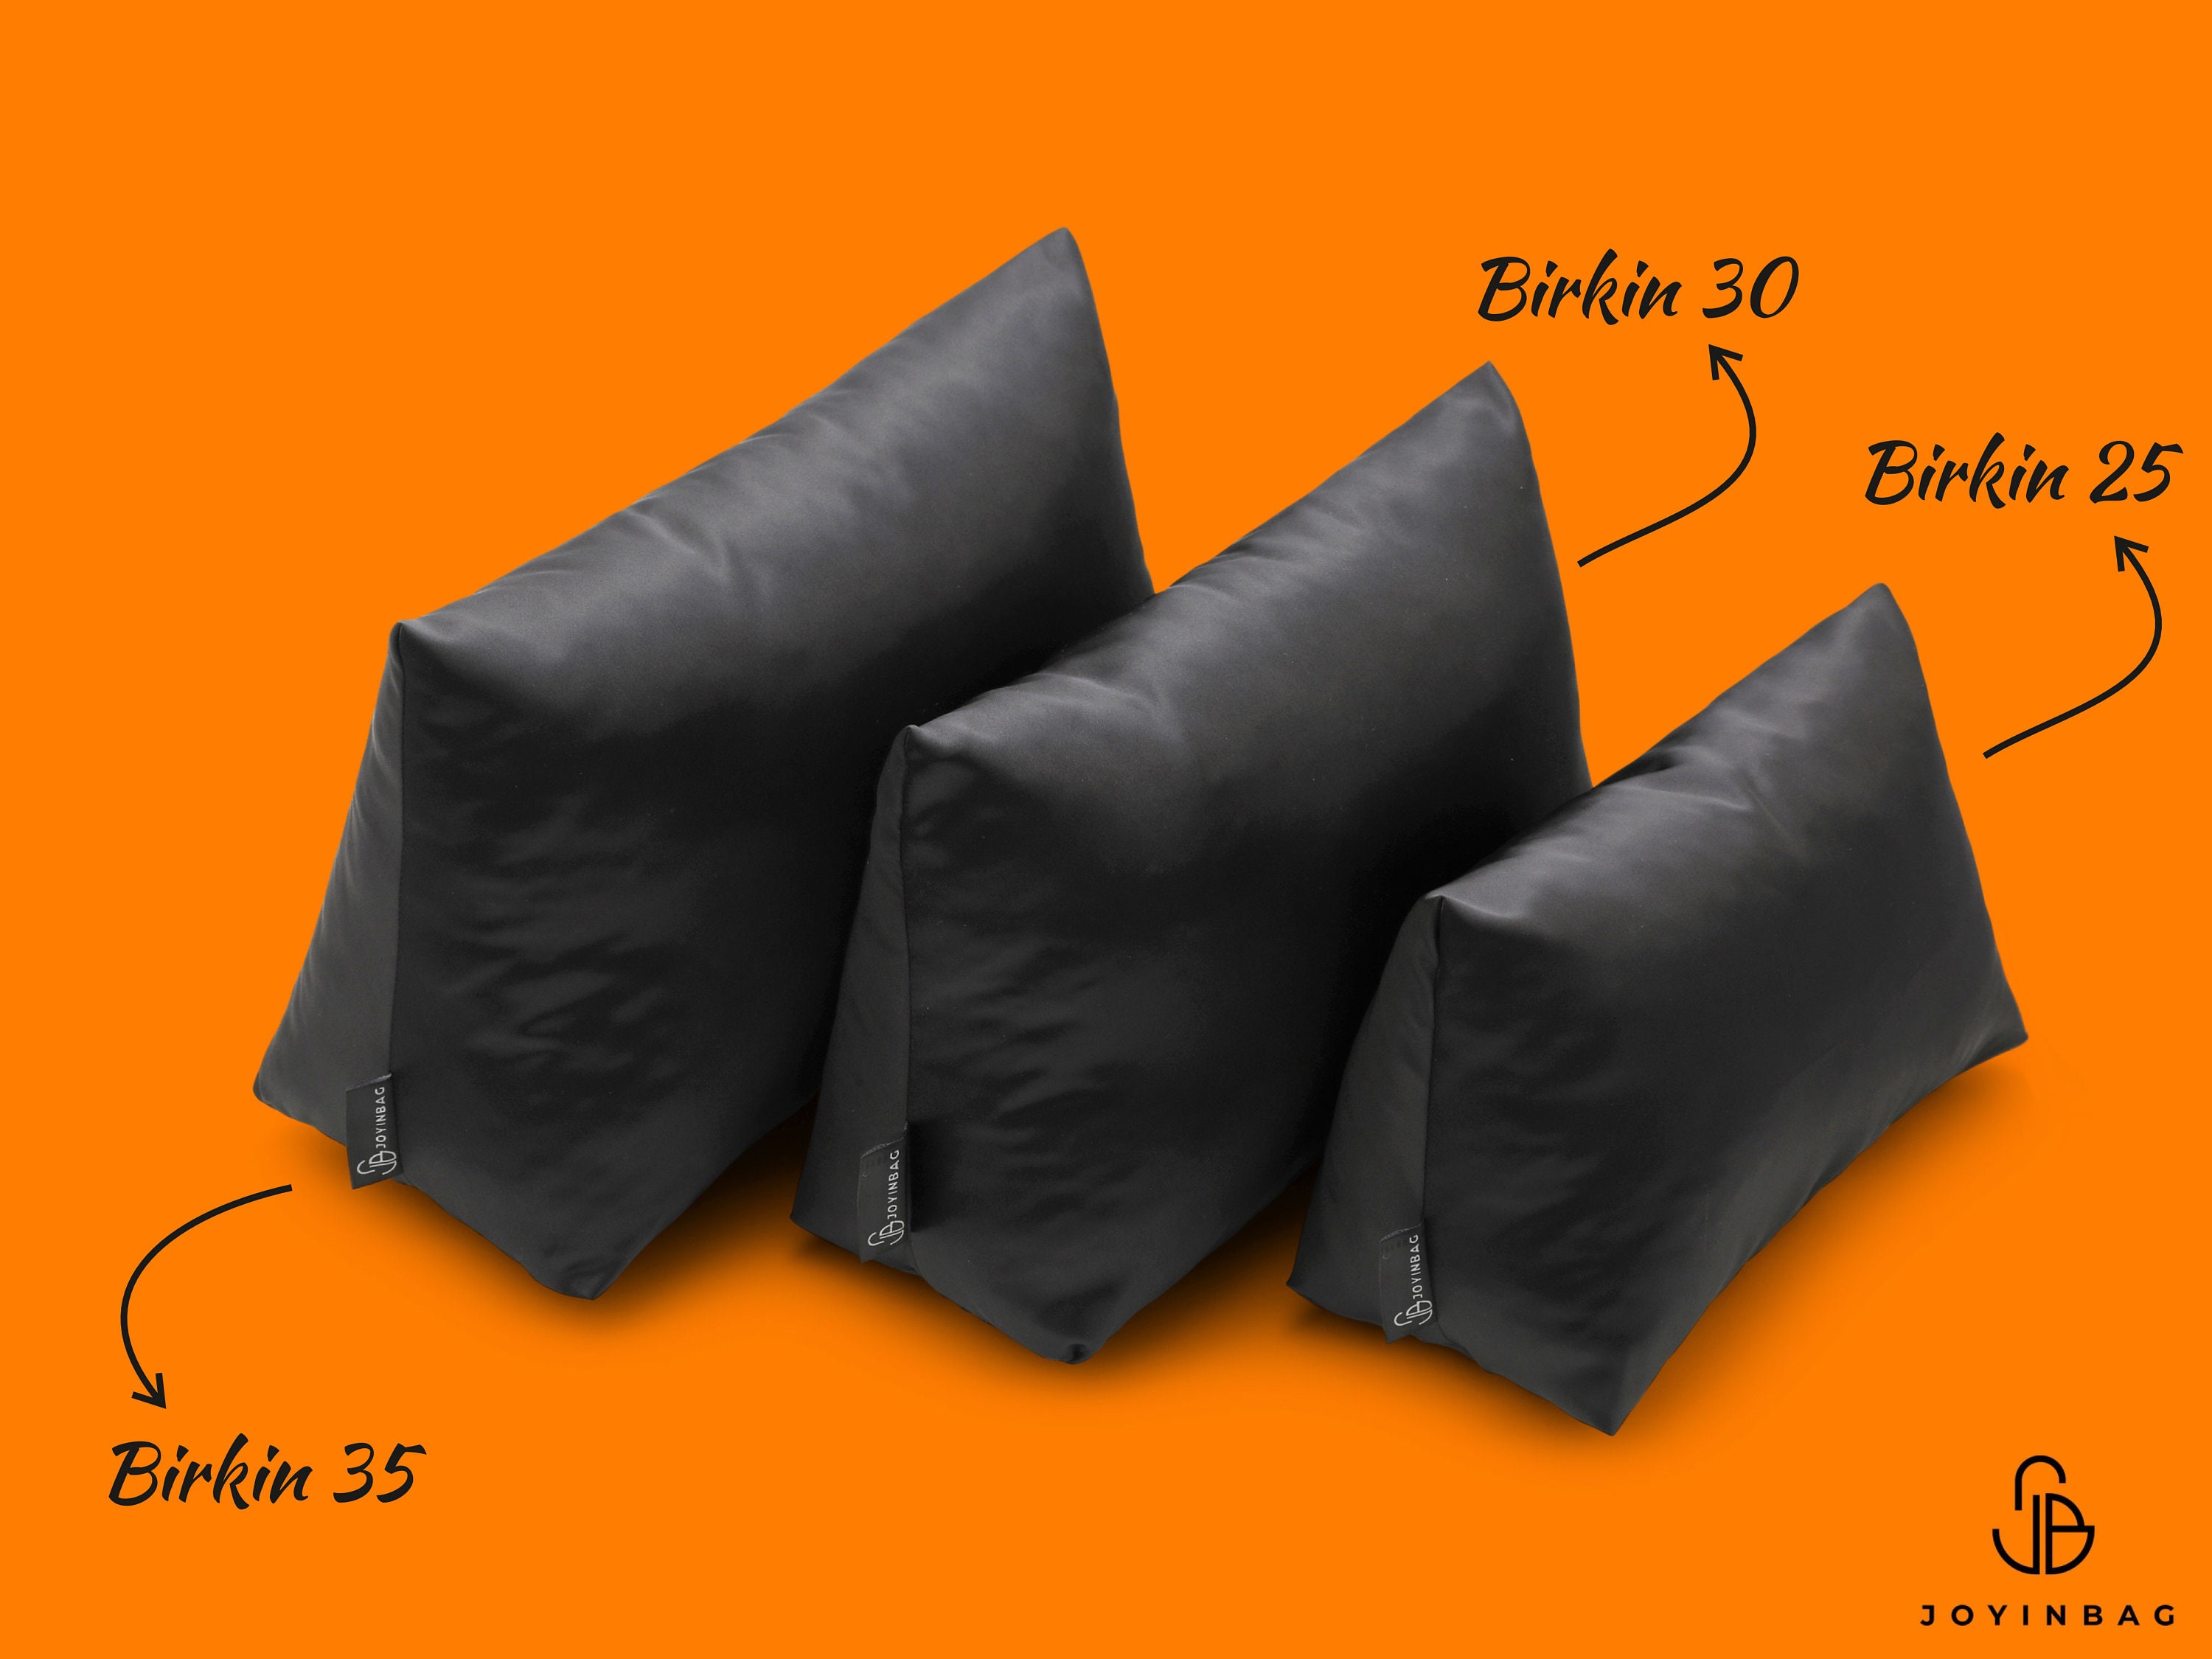 Purse Pillow for Hermes Birkin Bag Models, Bag Shaper Pillow, Purse St -  Zepmade